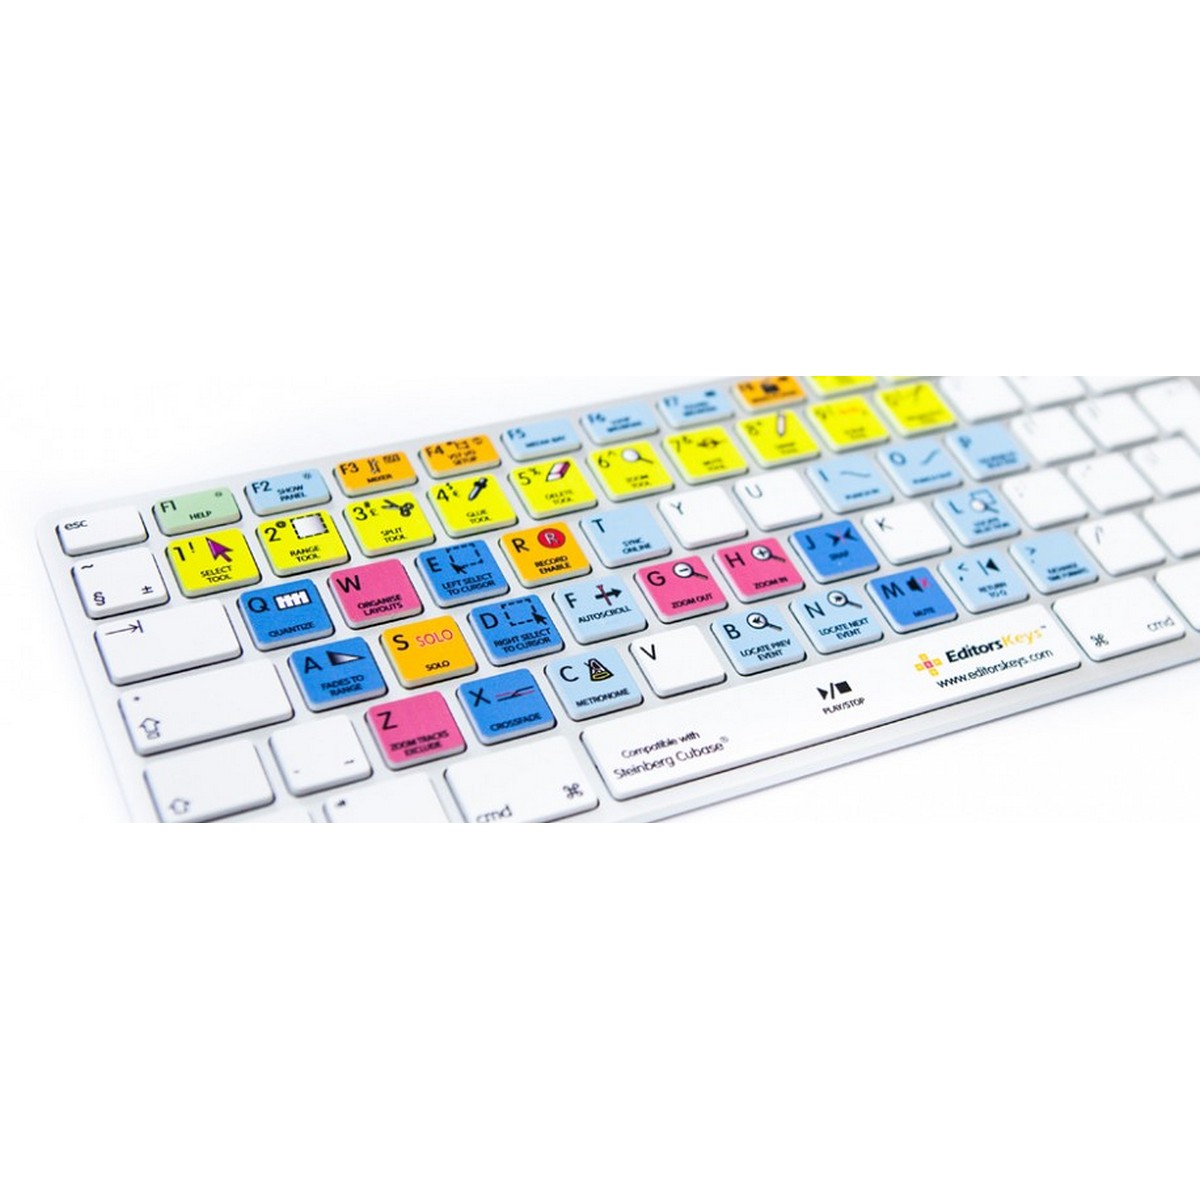 Editors Keys Apple Keyboard for Cubase | Apple Shortcut Wired Keyboard